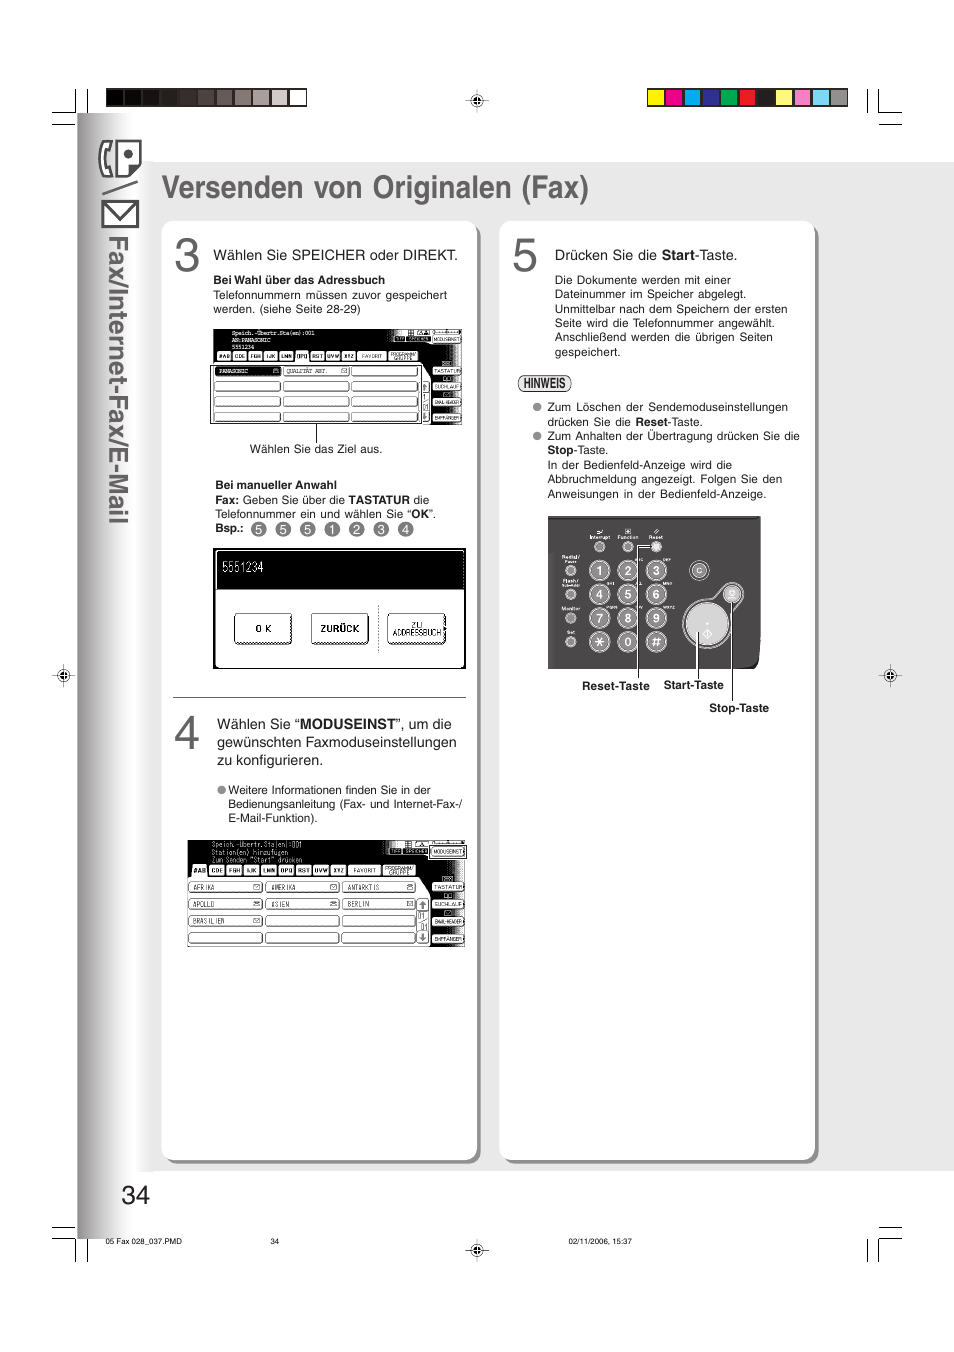 Versenden von originalen (fax), Fax/internet-f ax/e-mail 34 | Panasonic DP8035 Benutzerhandbuch | Seite 34 / 84